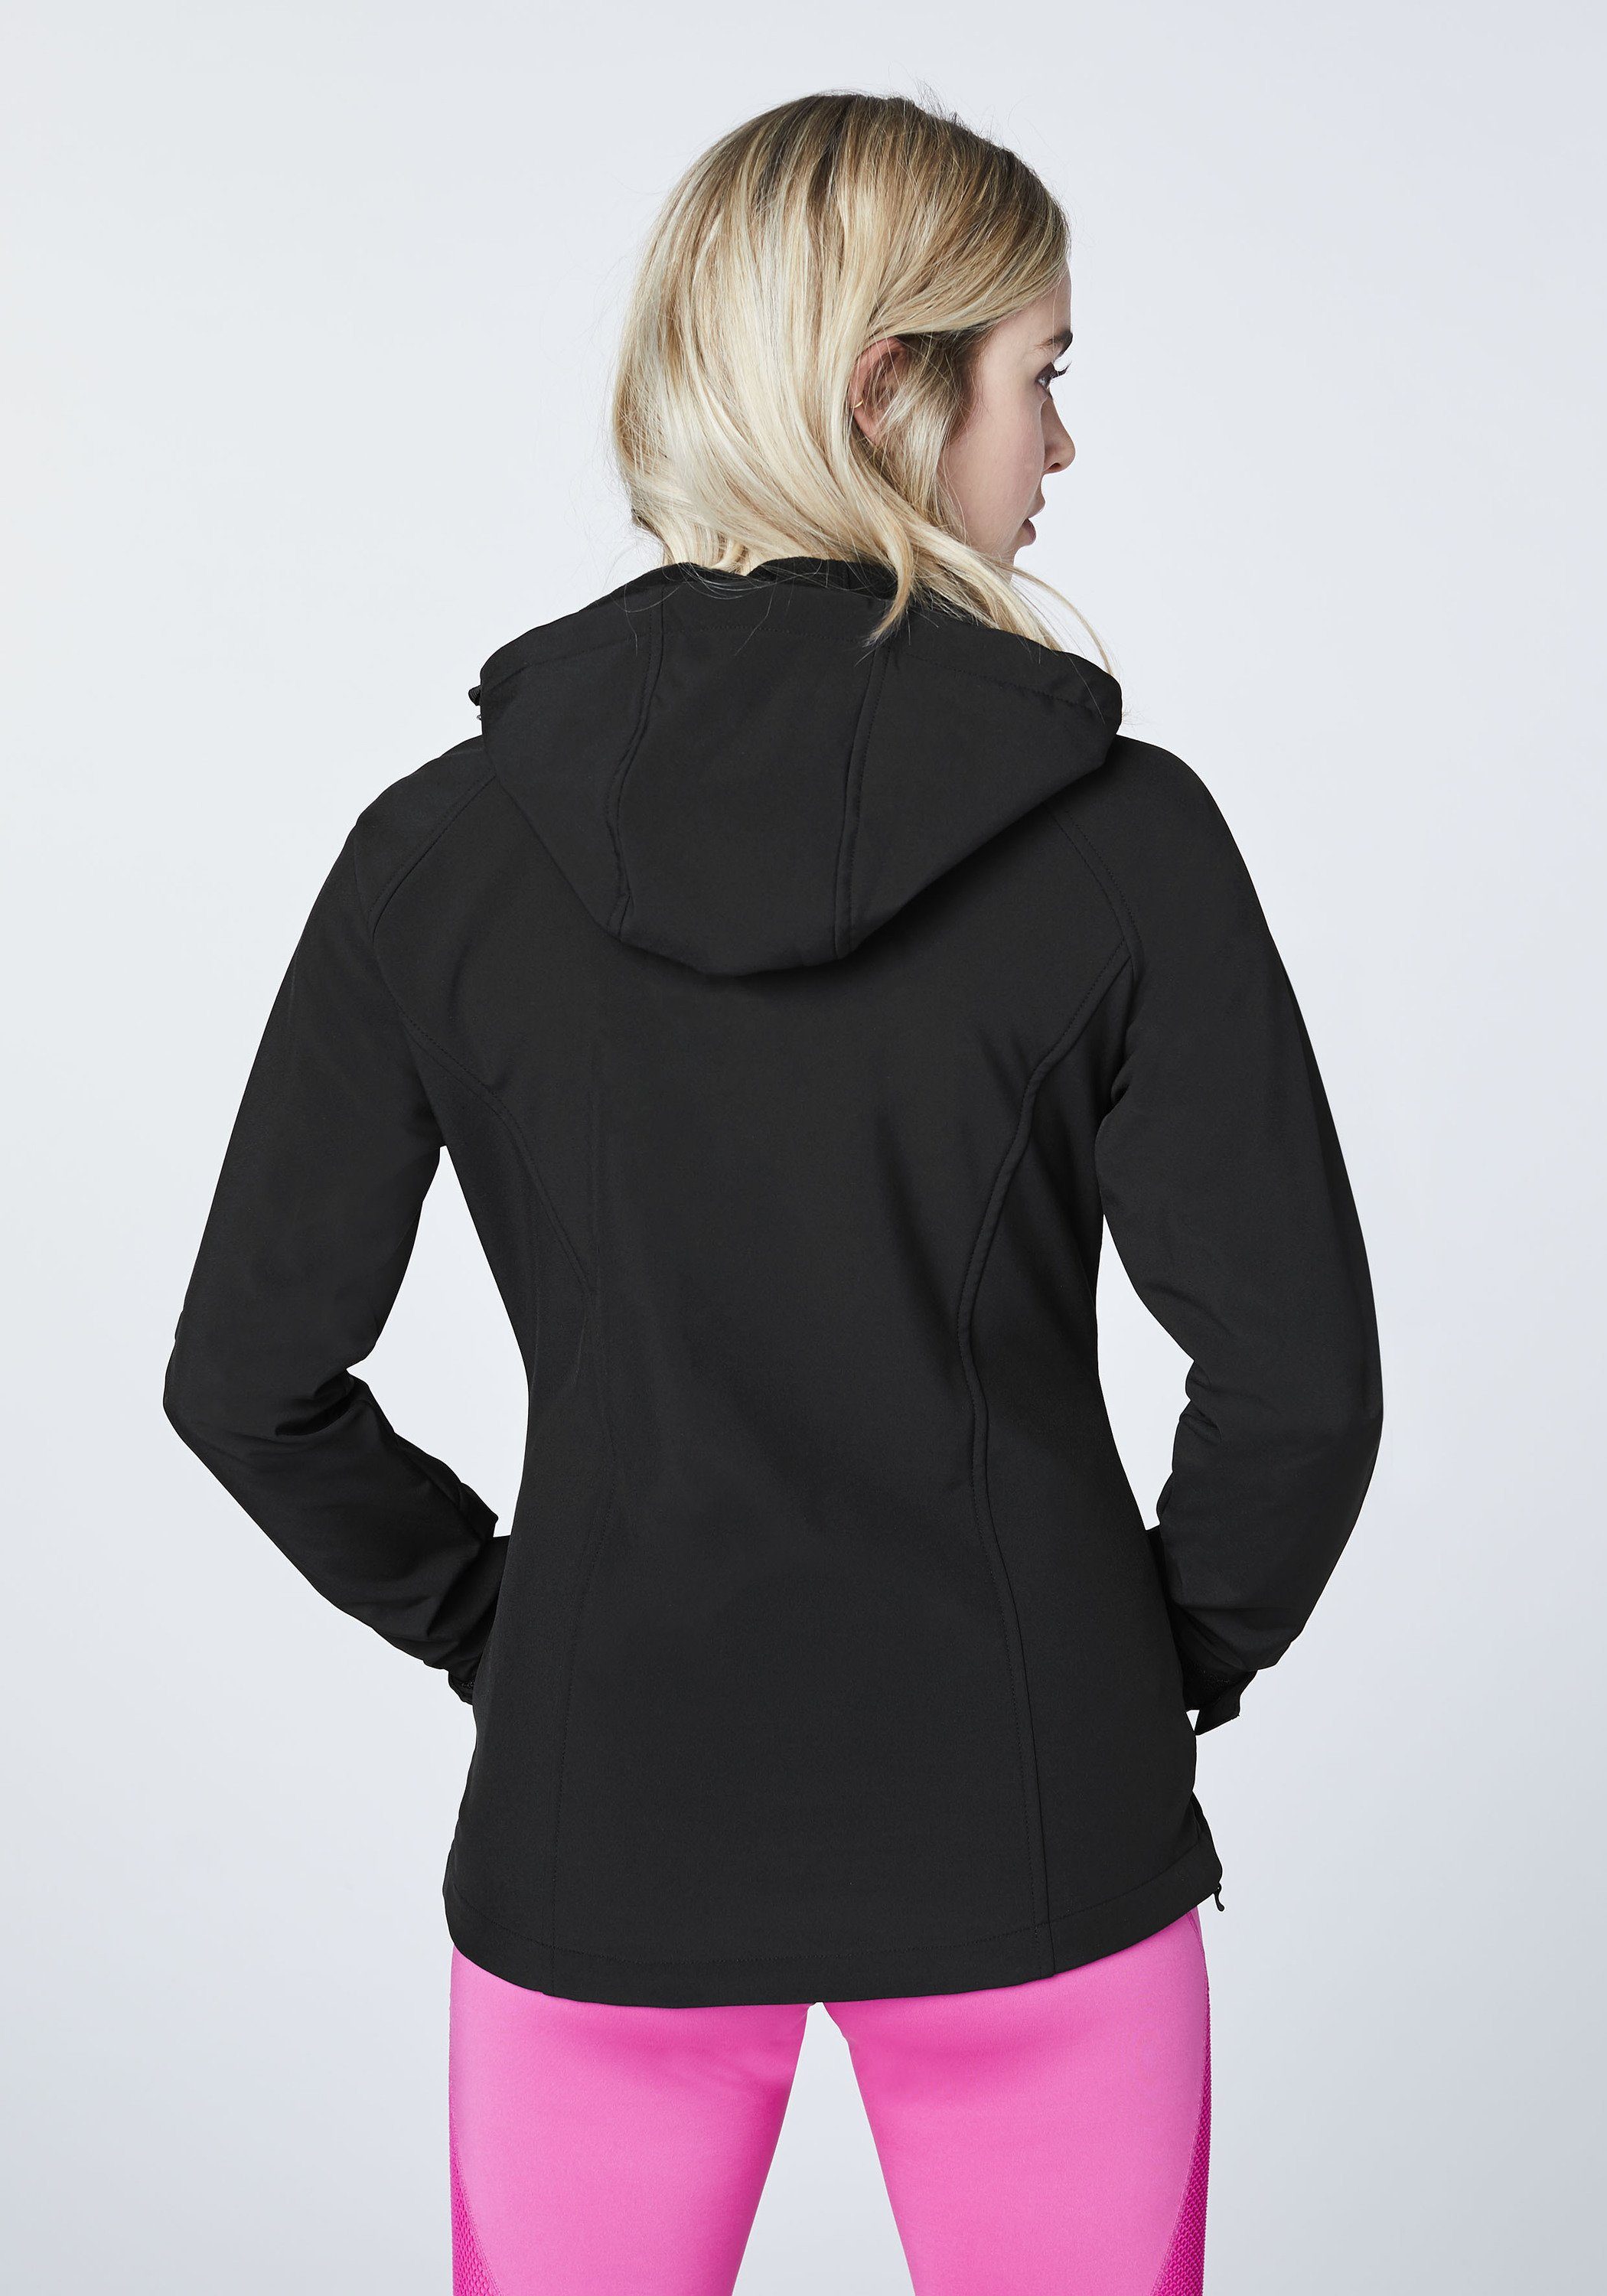 Chiemsee Softshelljacke Softshell-Jacke im 1 funktionalen schwarz Design